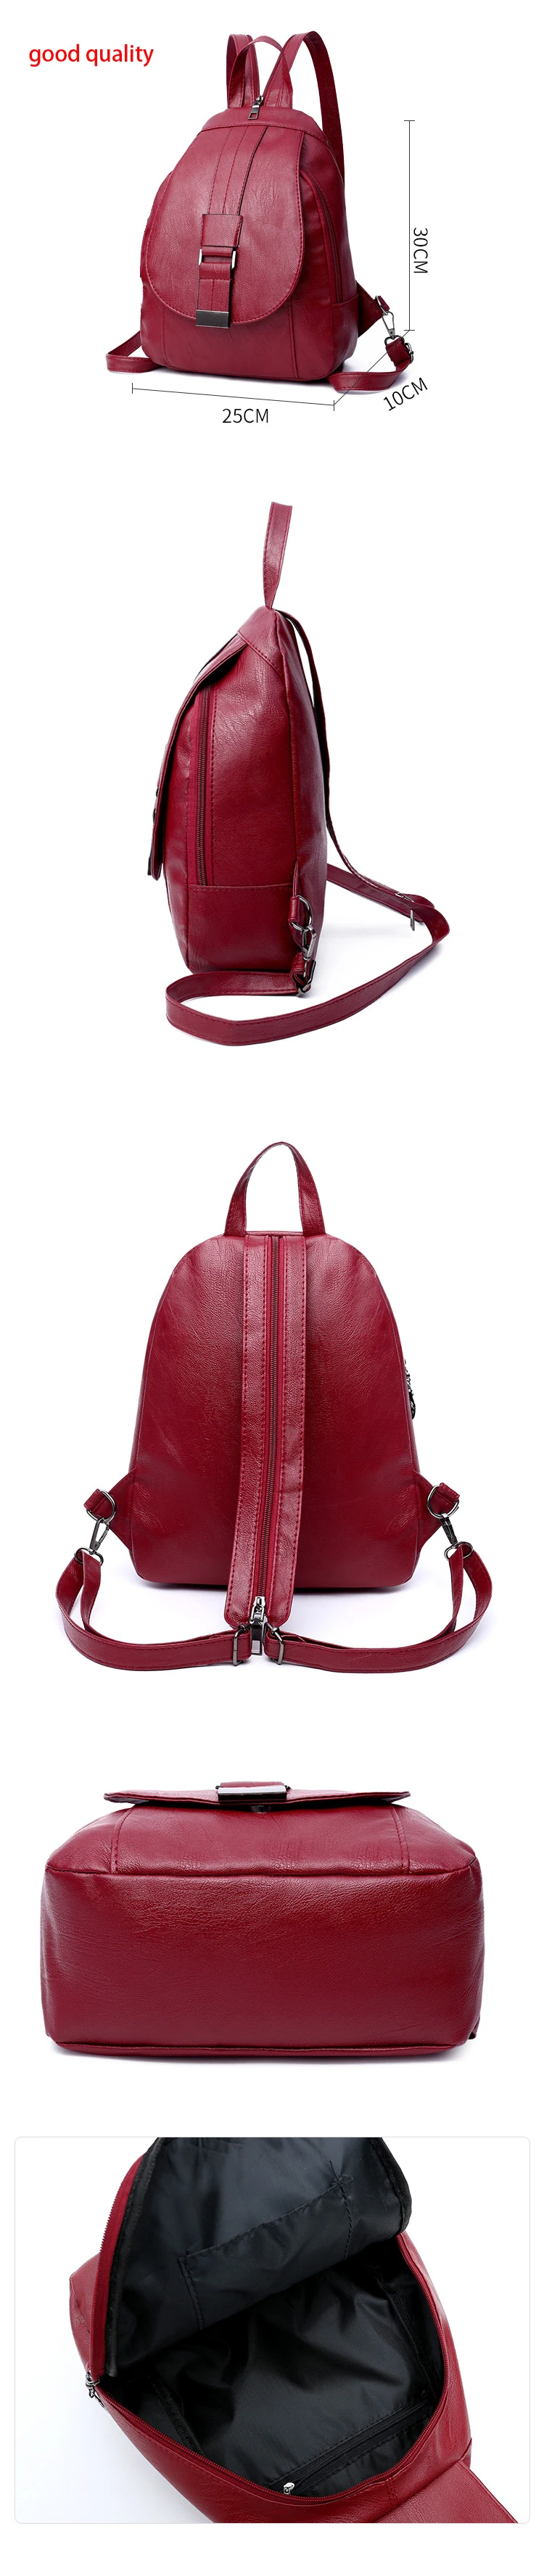 H307909c766064d58bda21a3b4b8c5f54s atinfor Brand Anti Theft Women Leather Backpacks Purse Vintage Female Shoulder Bag Travel Small Backpack Lady